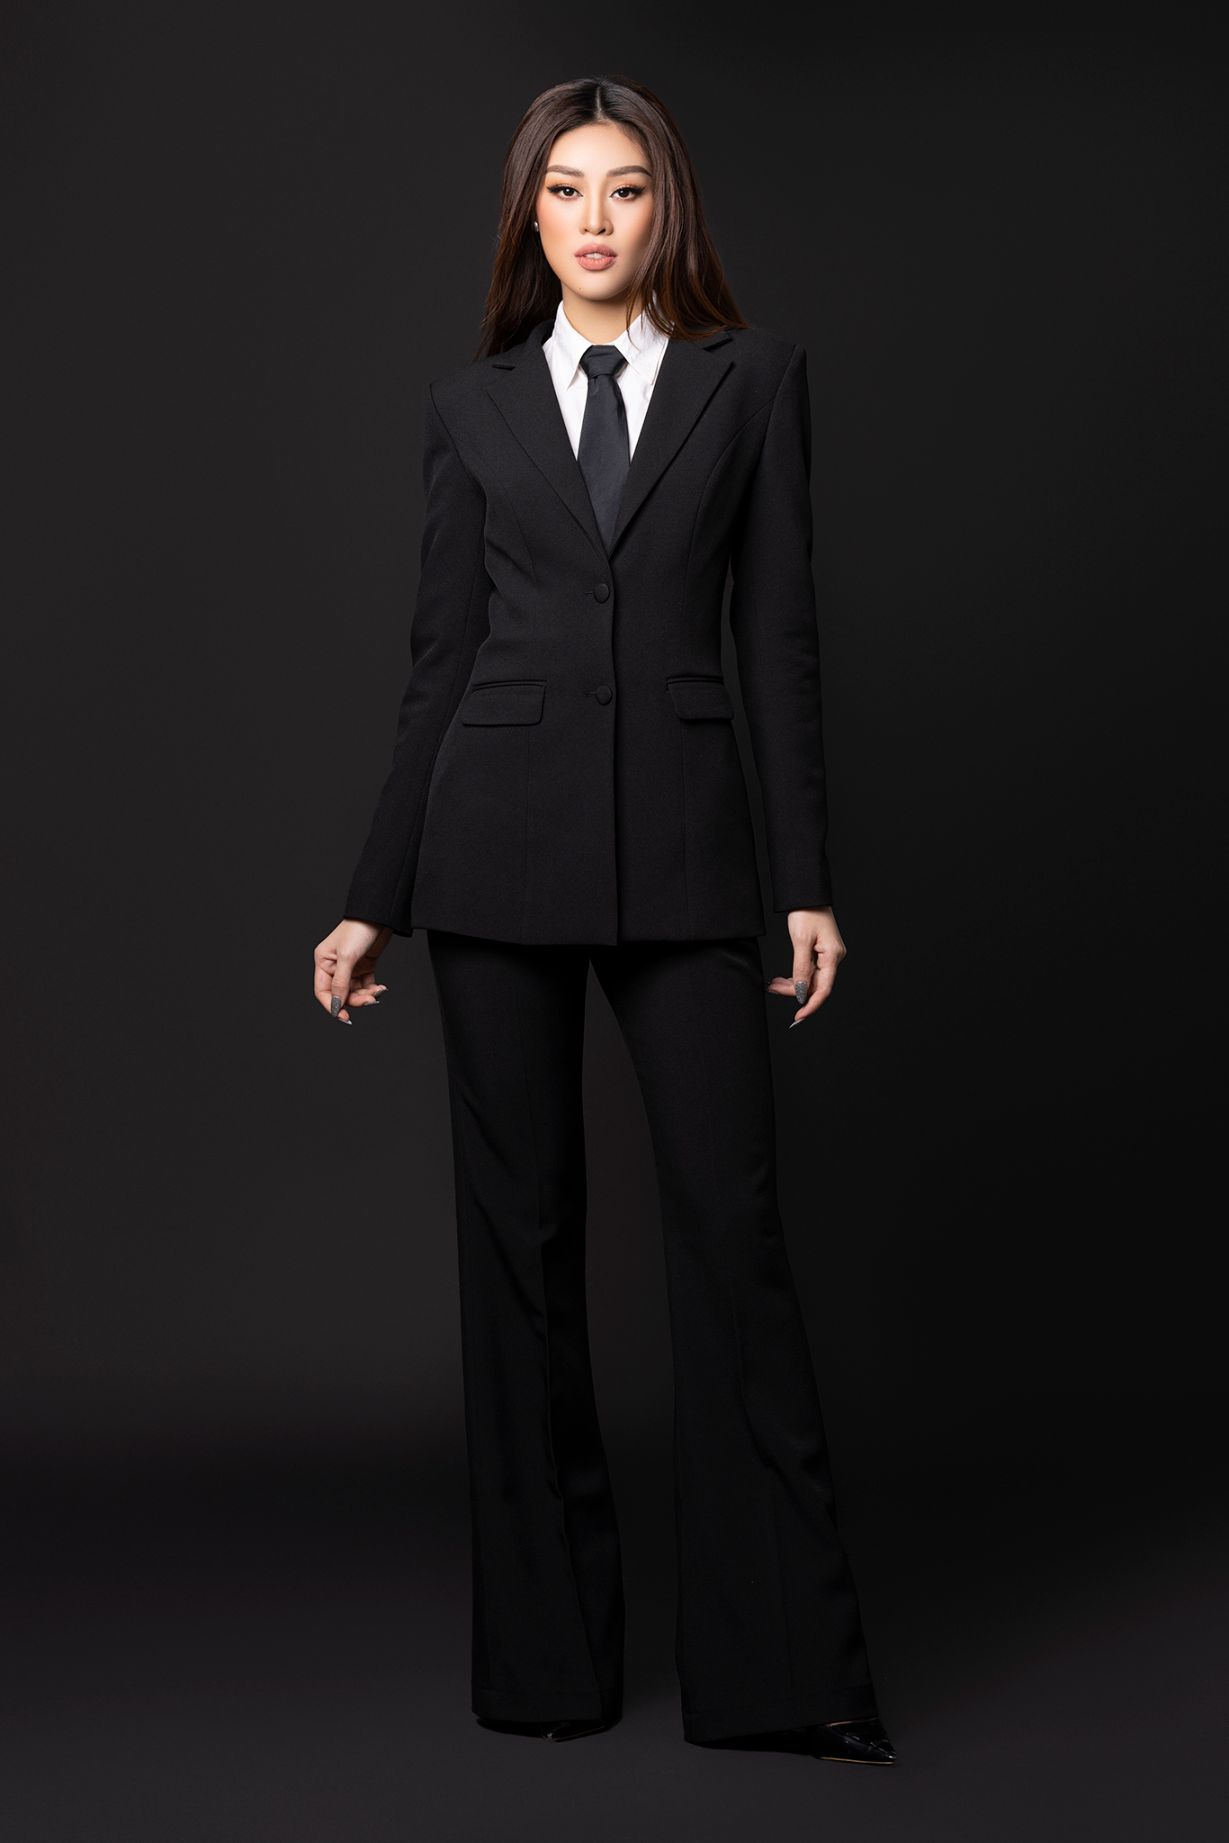 Business Woman 2 Khánh Vân lập công ty riêng, quyền lực trong vai trò Business Woman